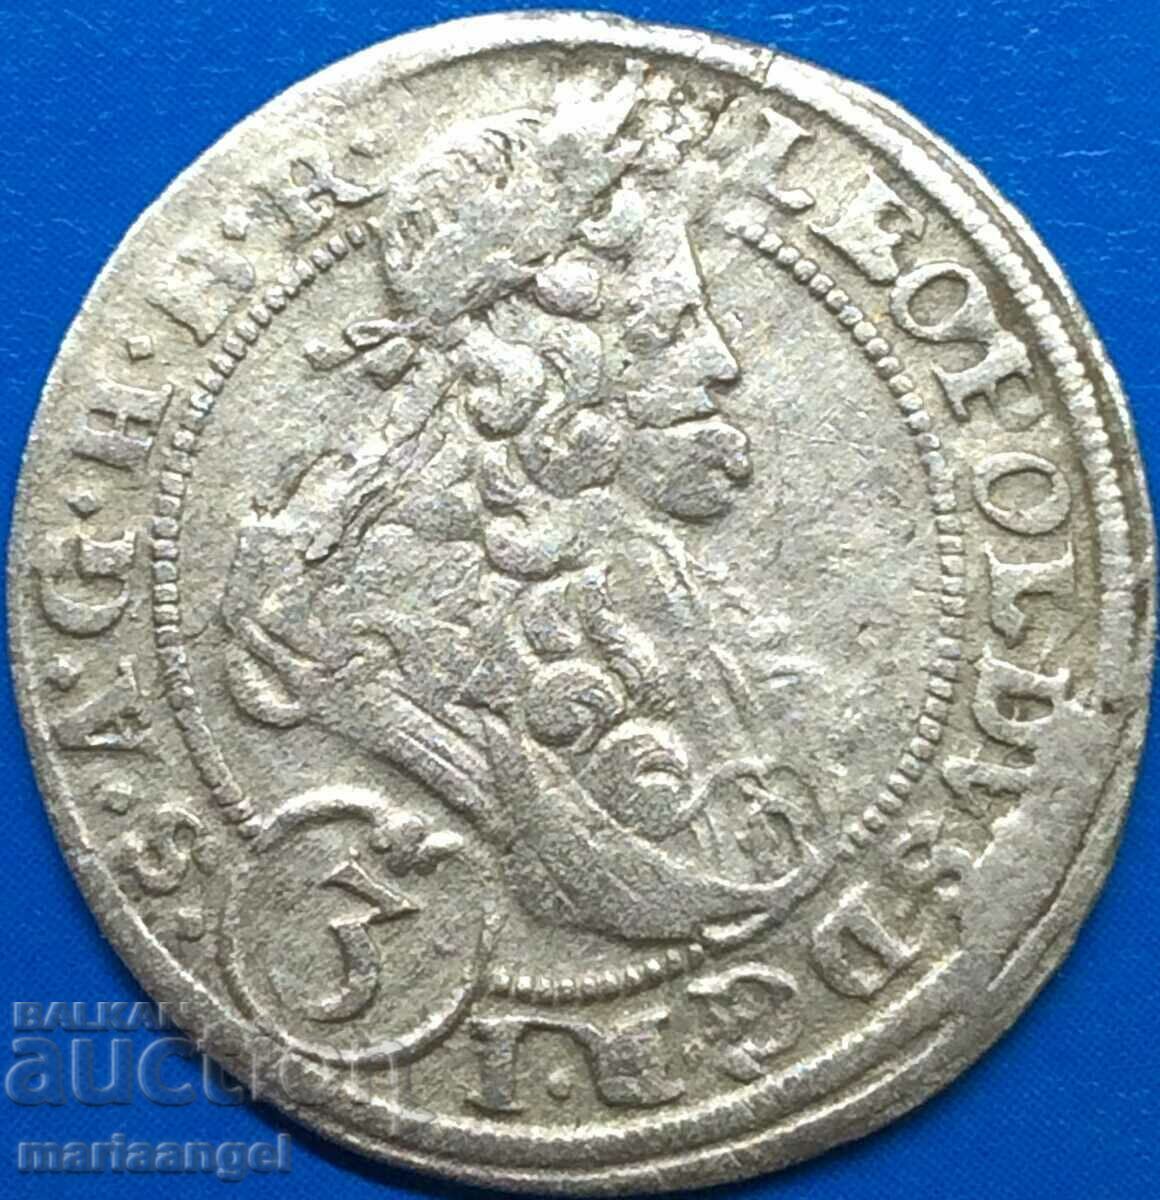 Silesia 3 Kreuzer 1664 Sigismund Austria silver